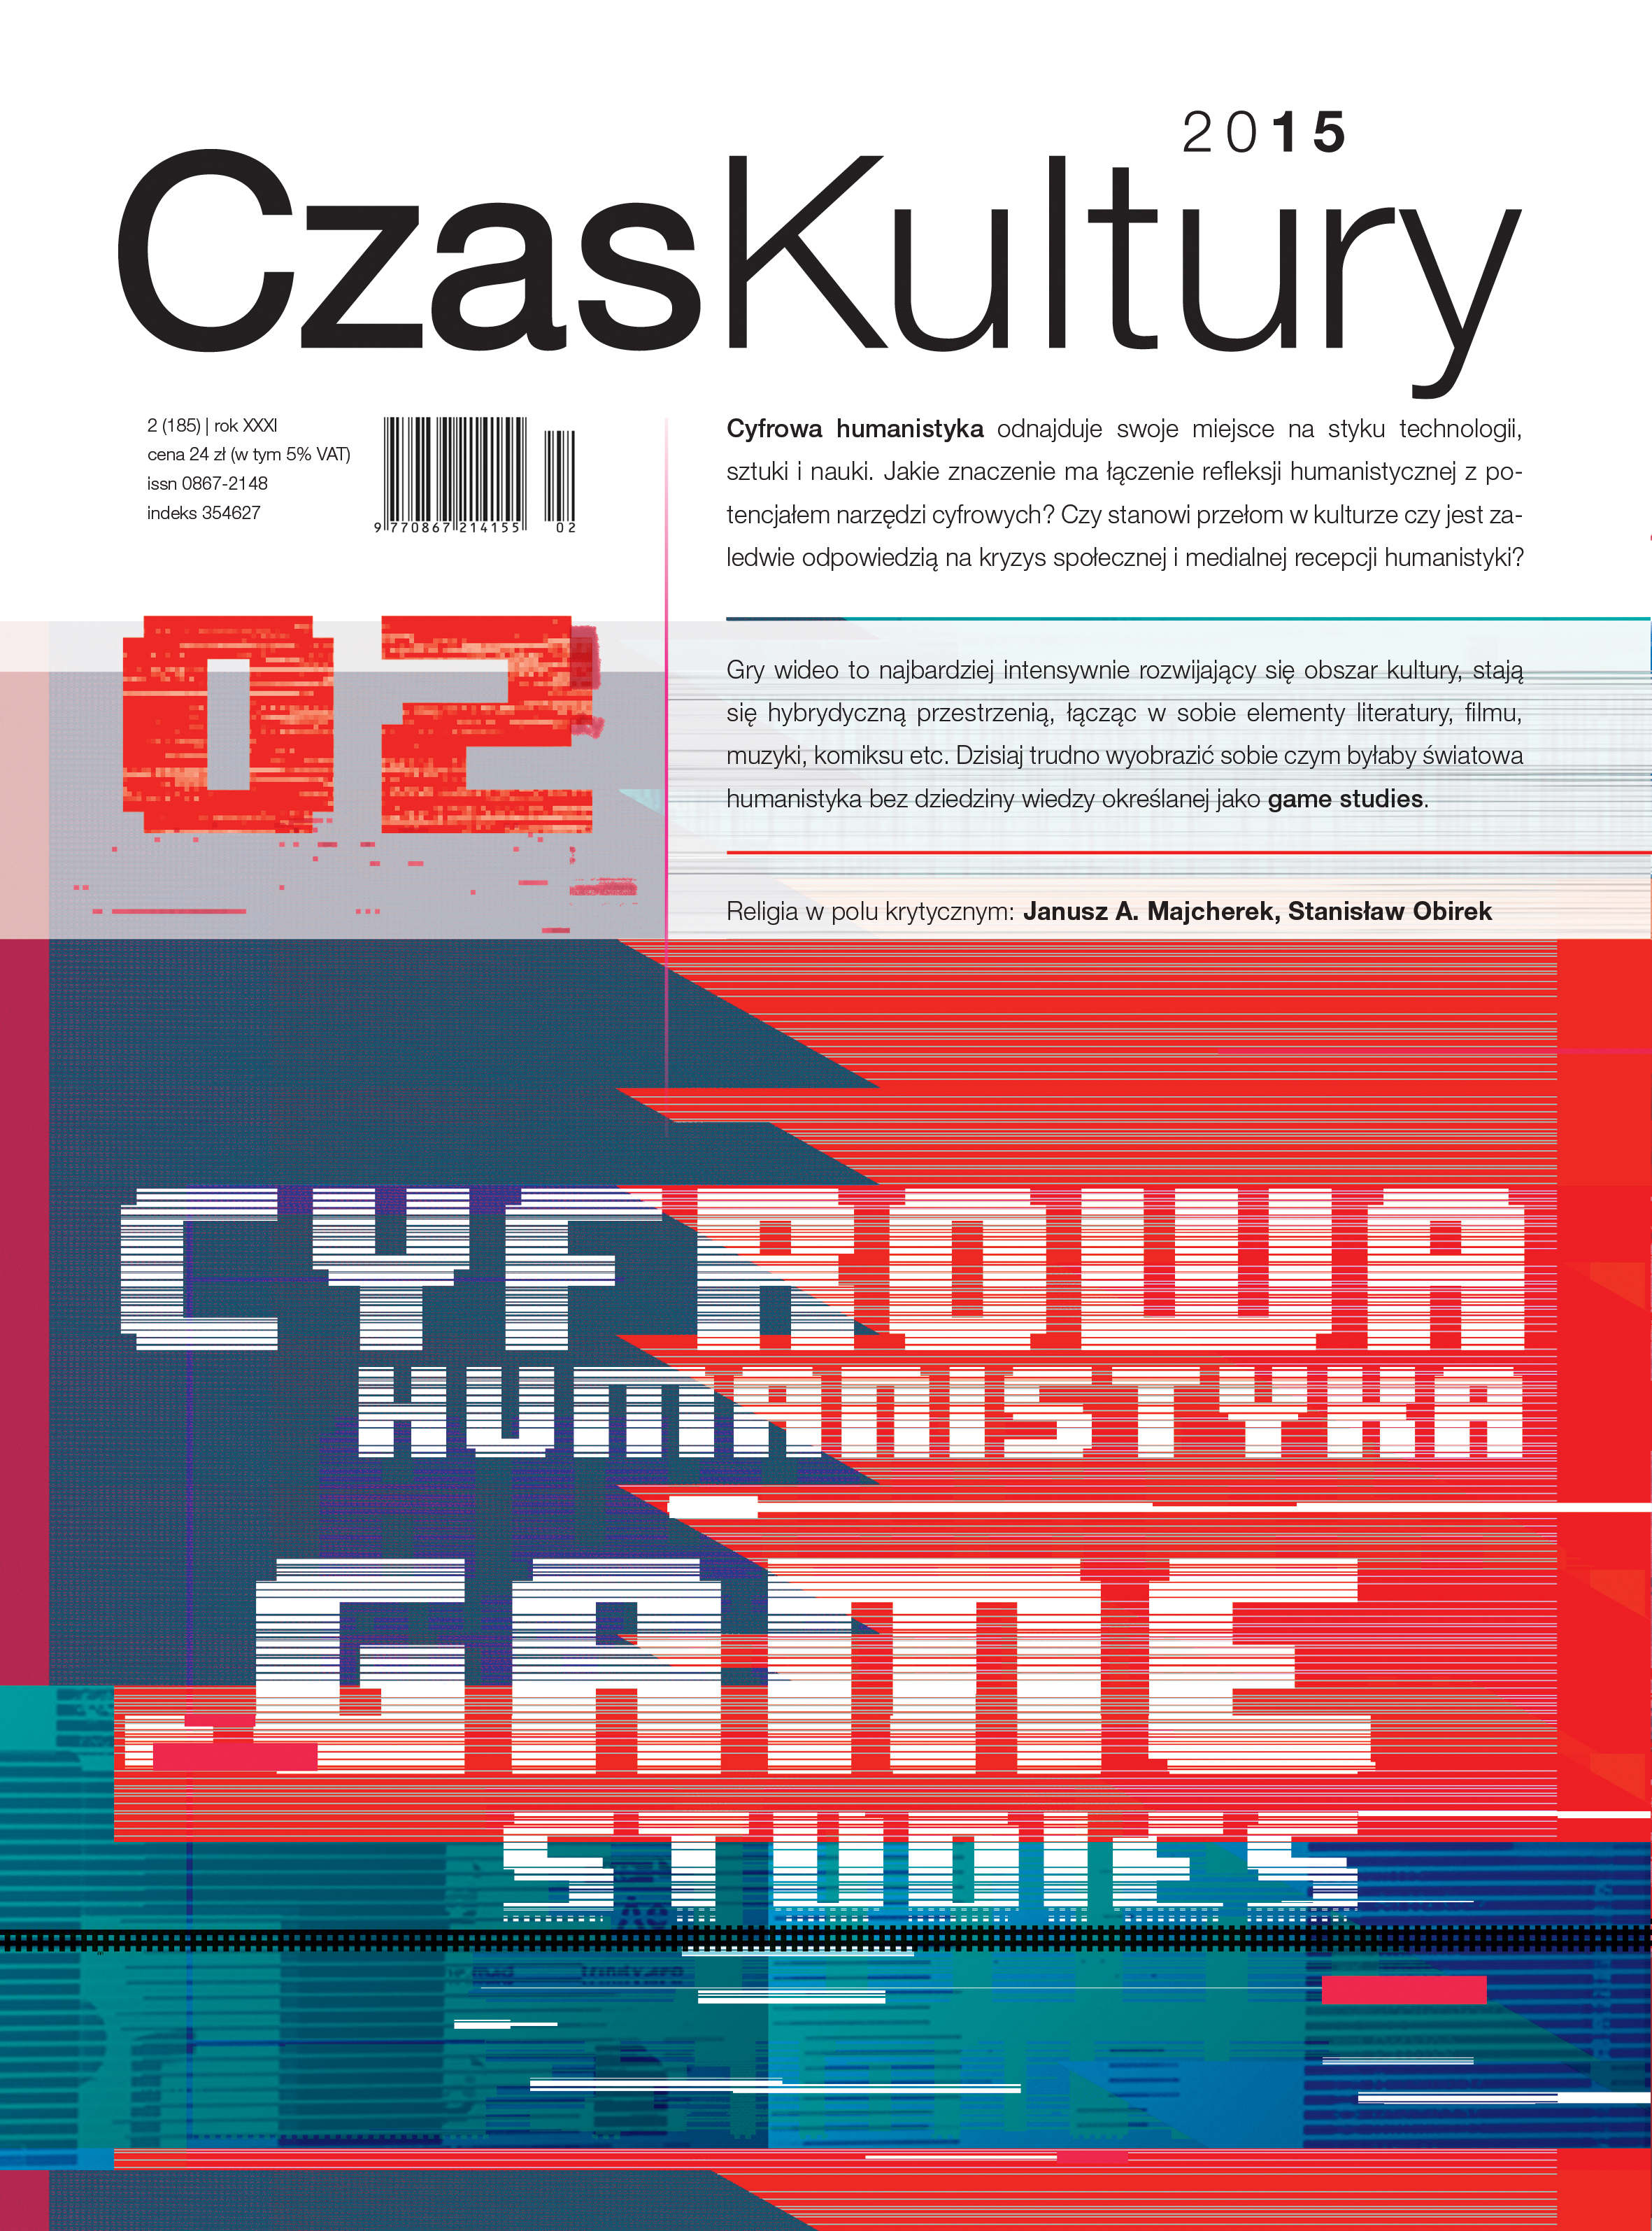 Cyfrowa humanistyka w Polsce: działania i konteksty